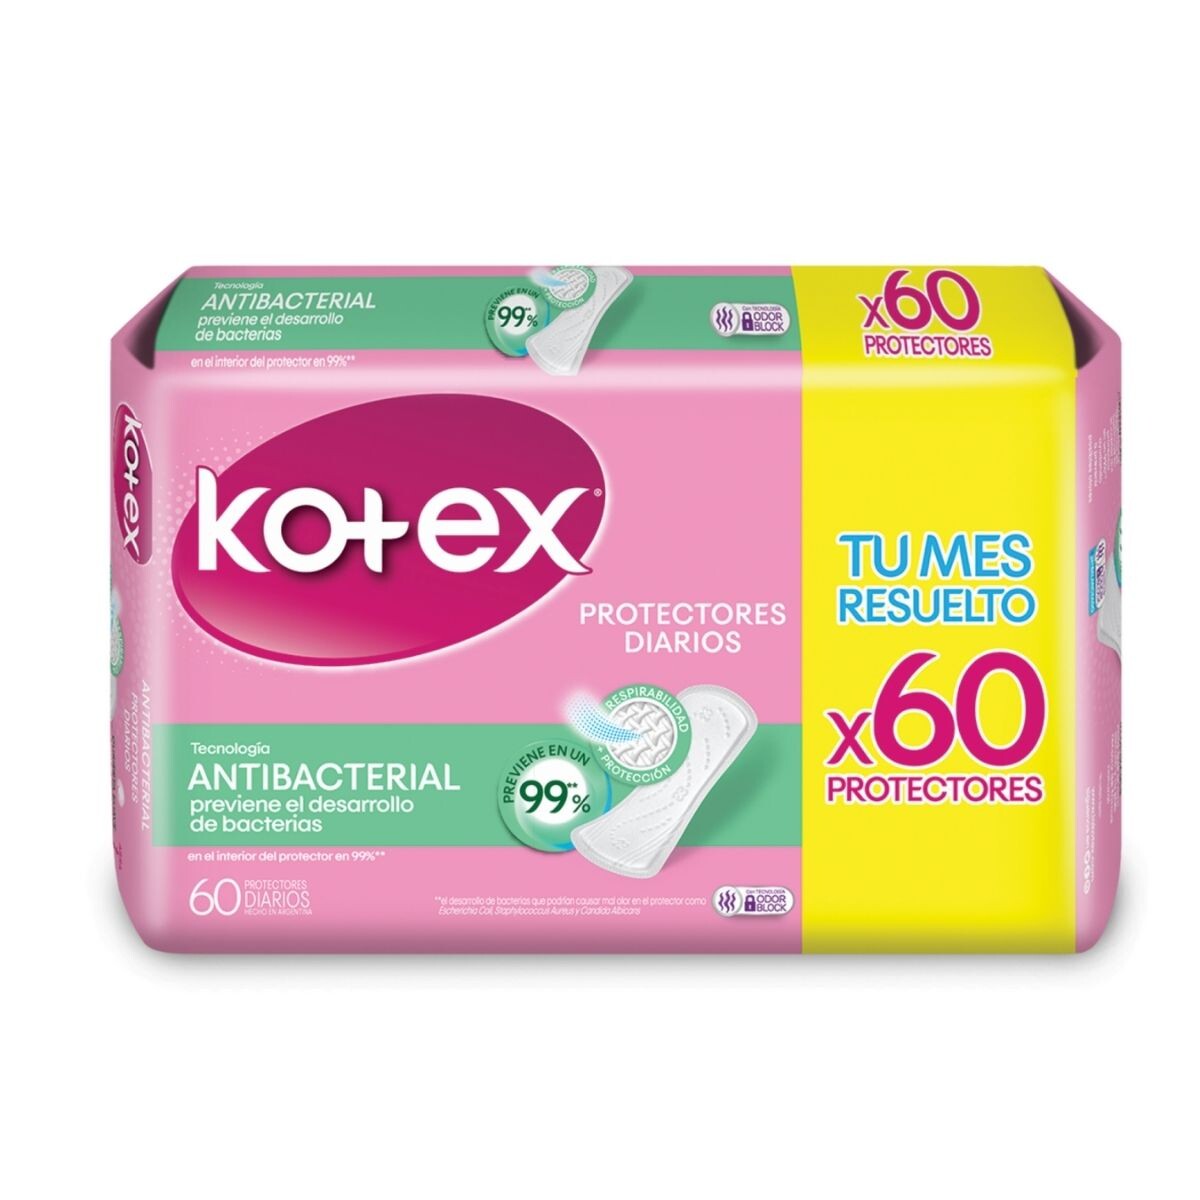 Protector Diario Kotex Antibacterial X60 